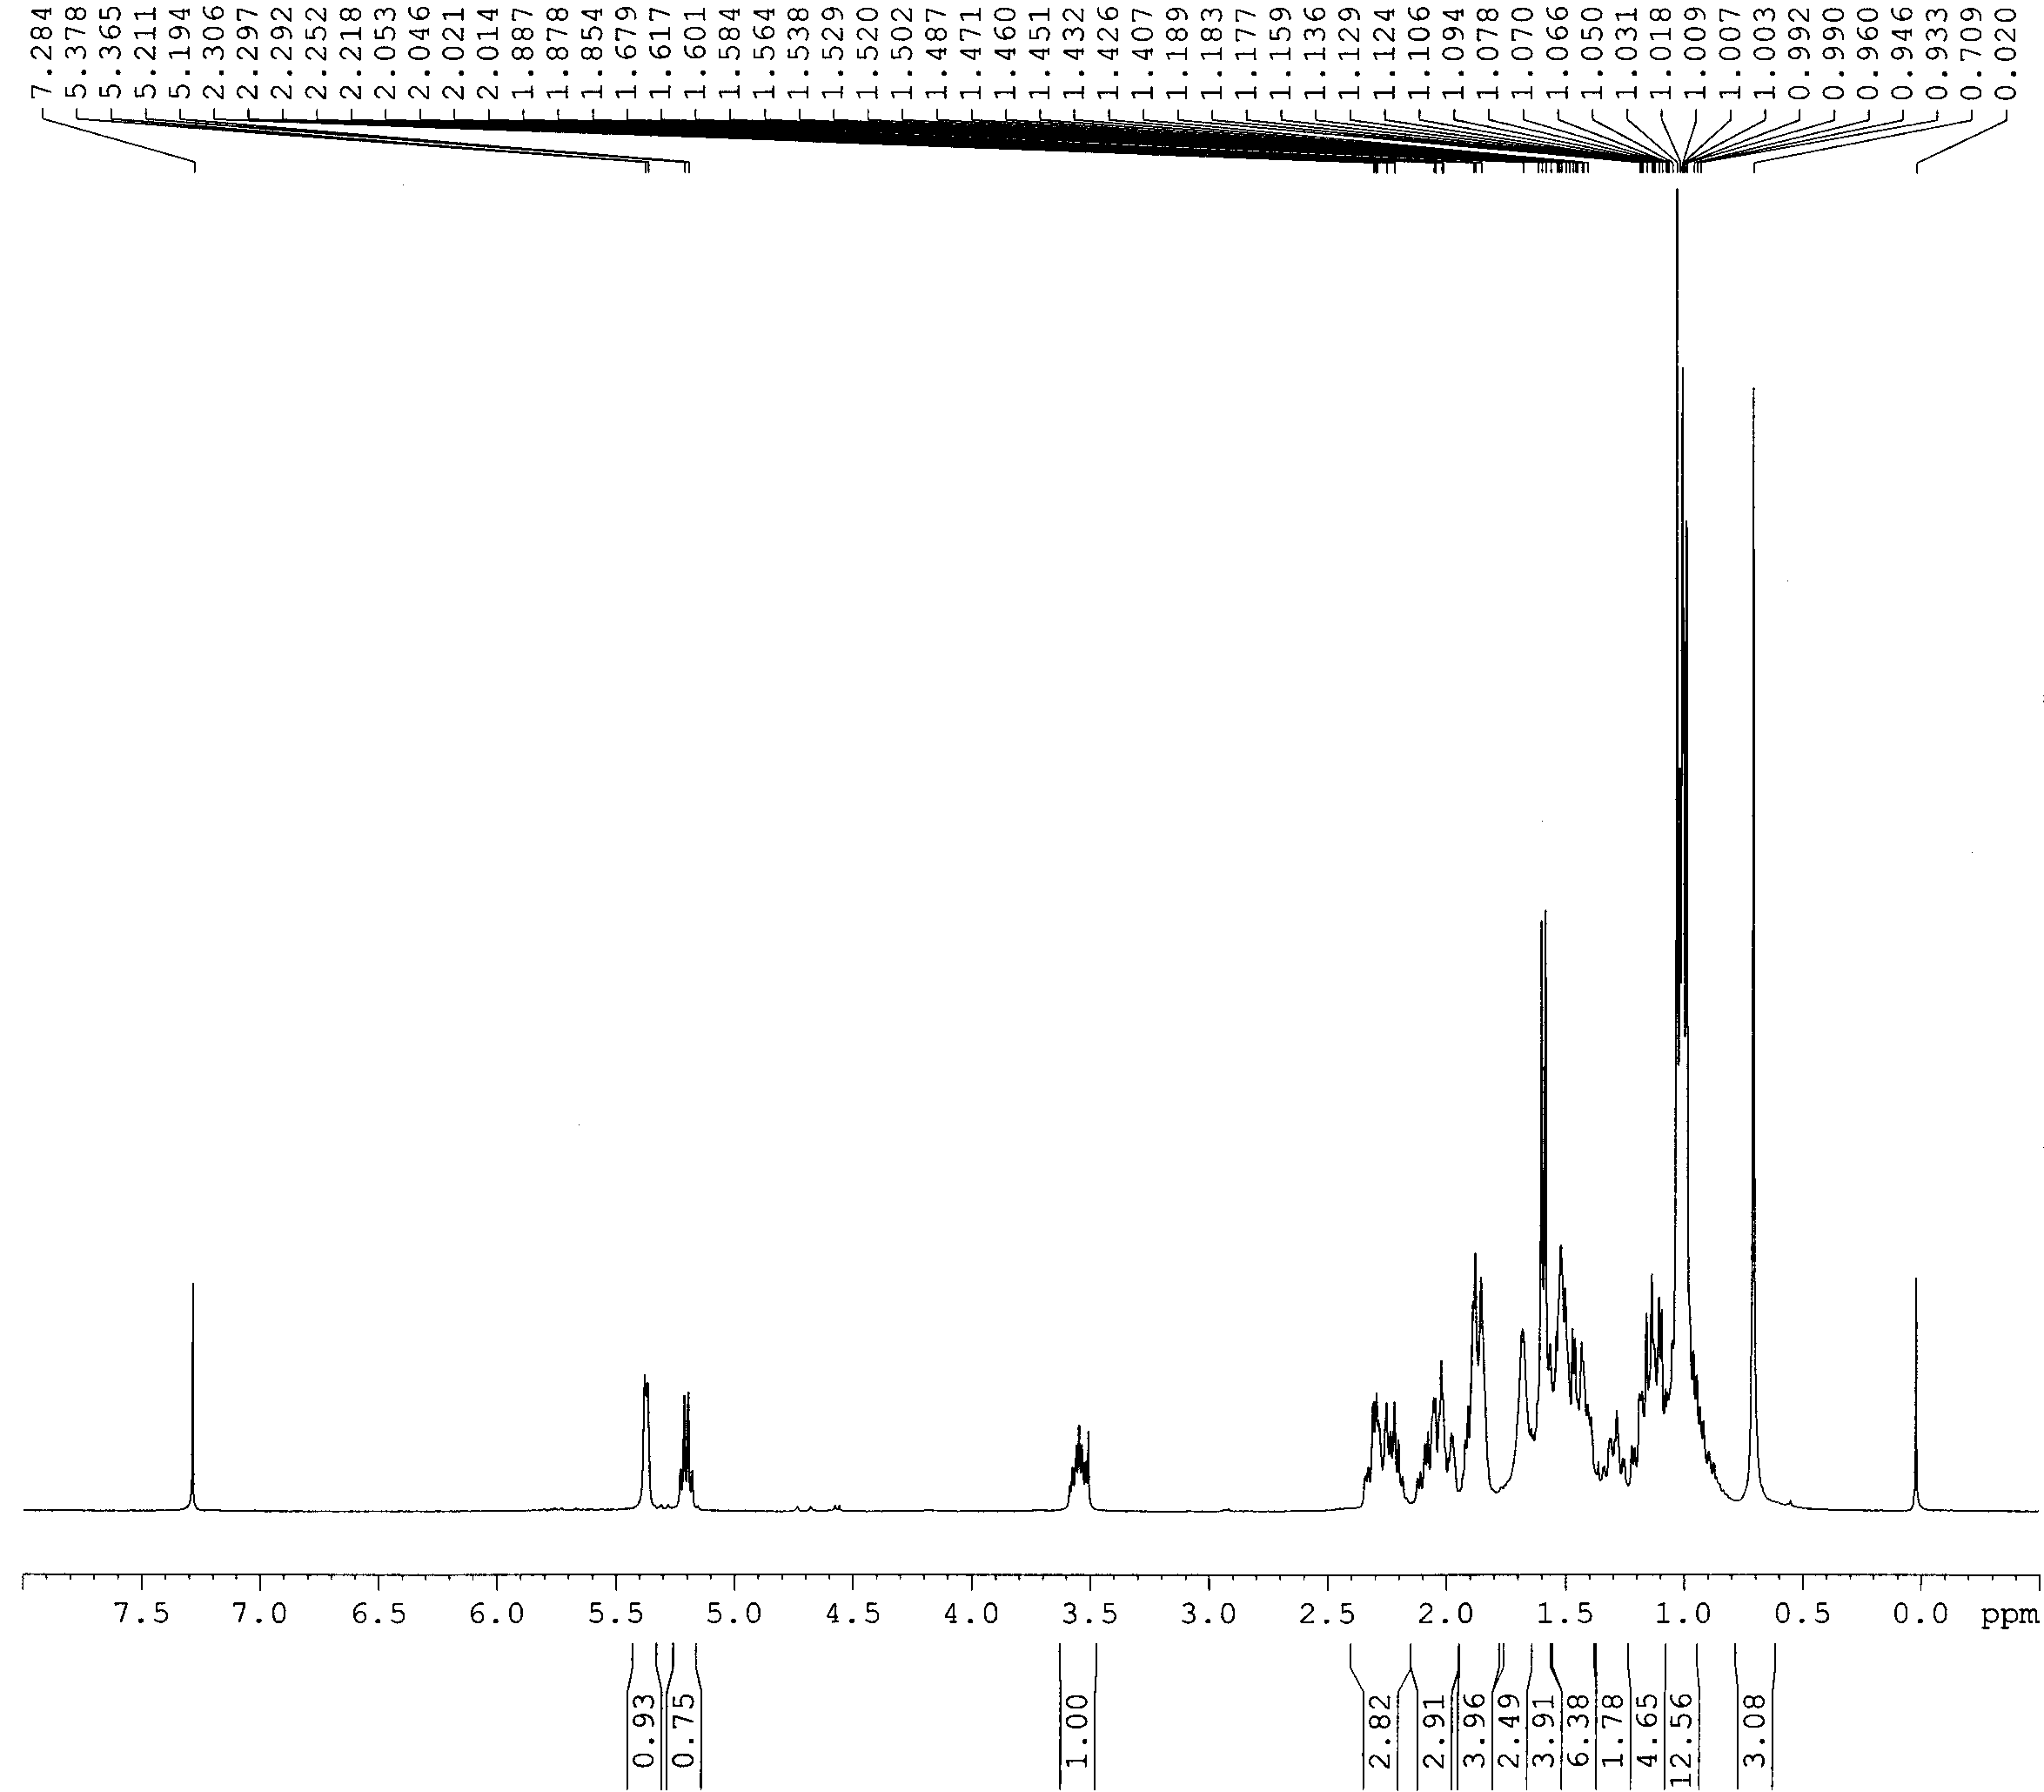 1H-NMR spectrum of compound 3